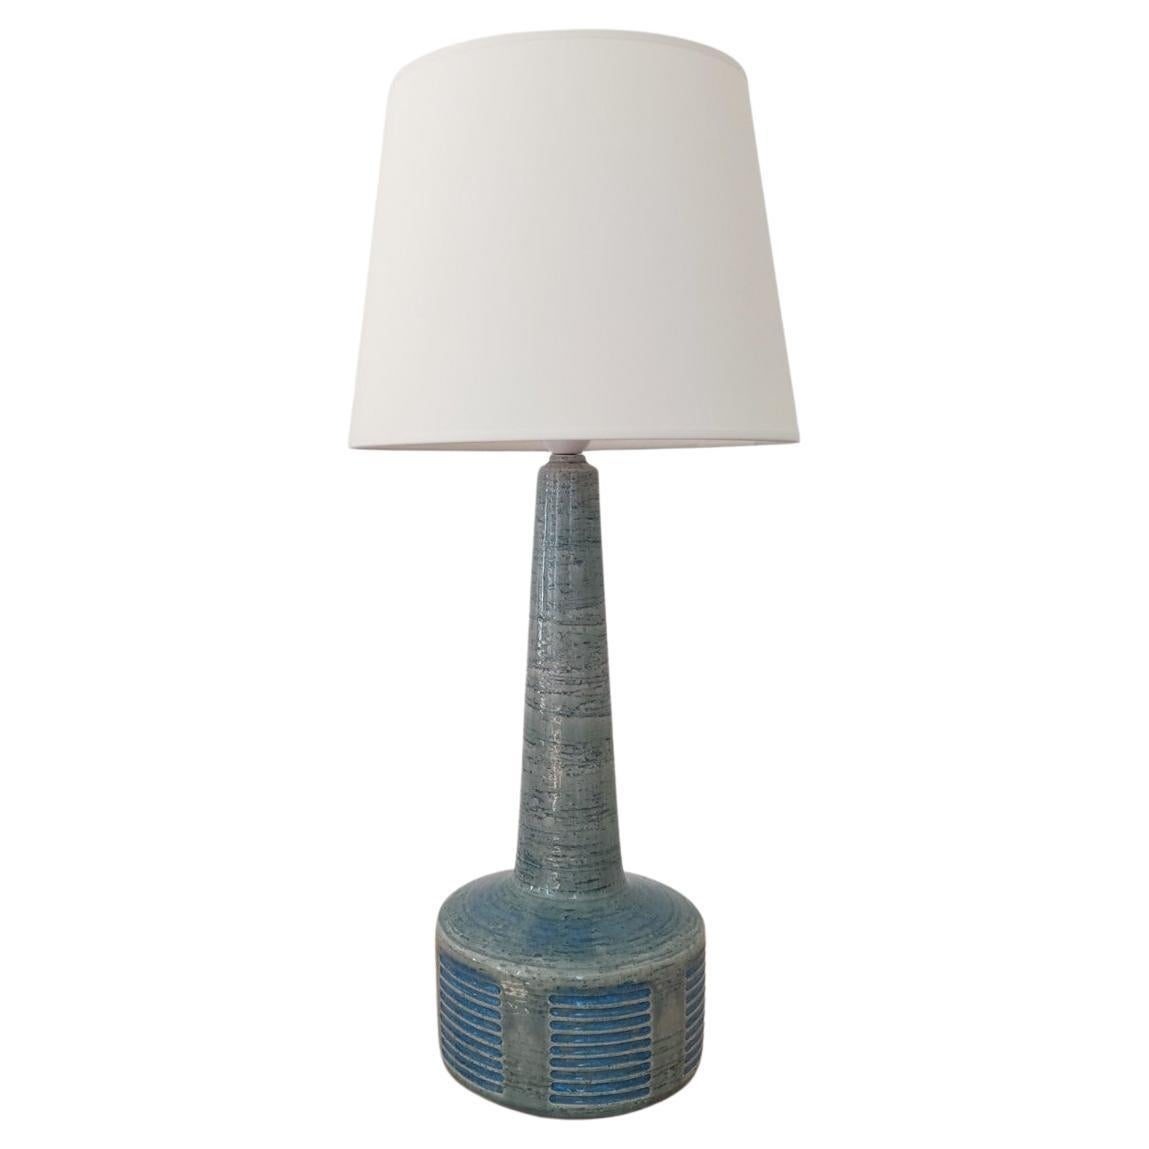 Palshus Lamp by Per Linnemann, Denmark 60s For Sale